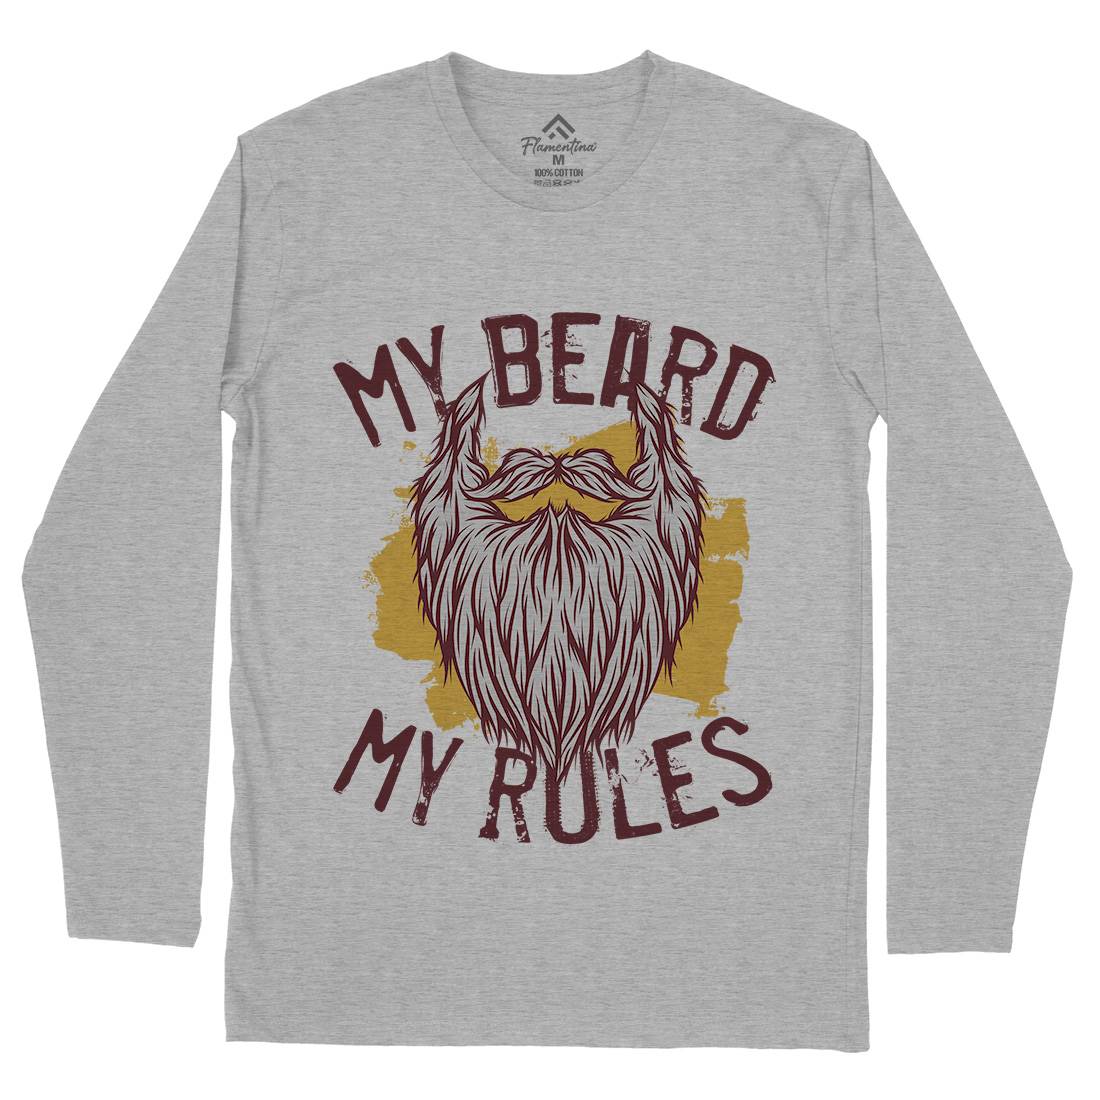 My Beard Rules Mens Long Sleeve T-Shirt Barber C808